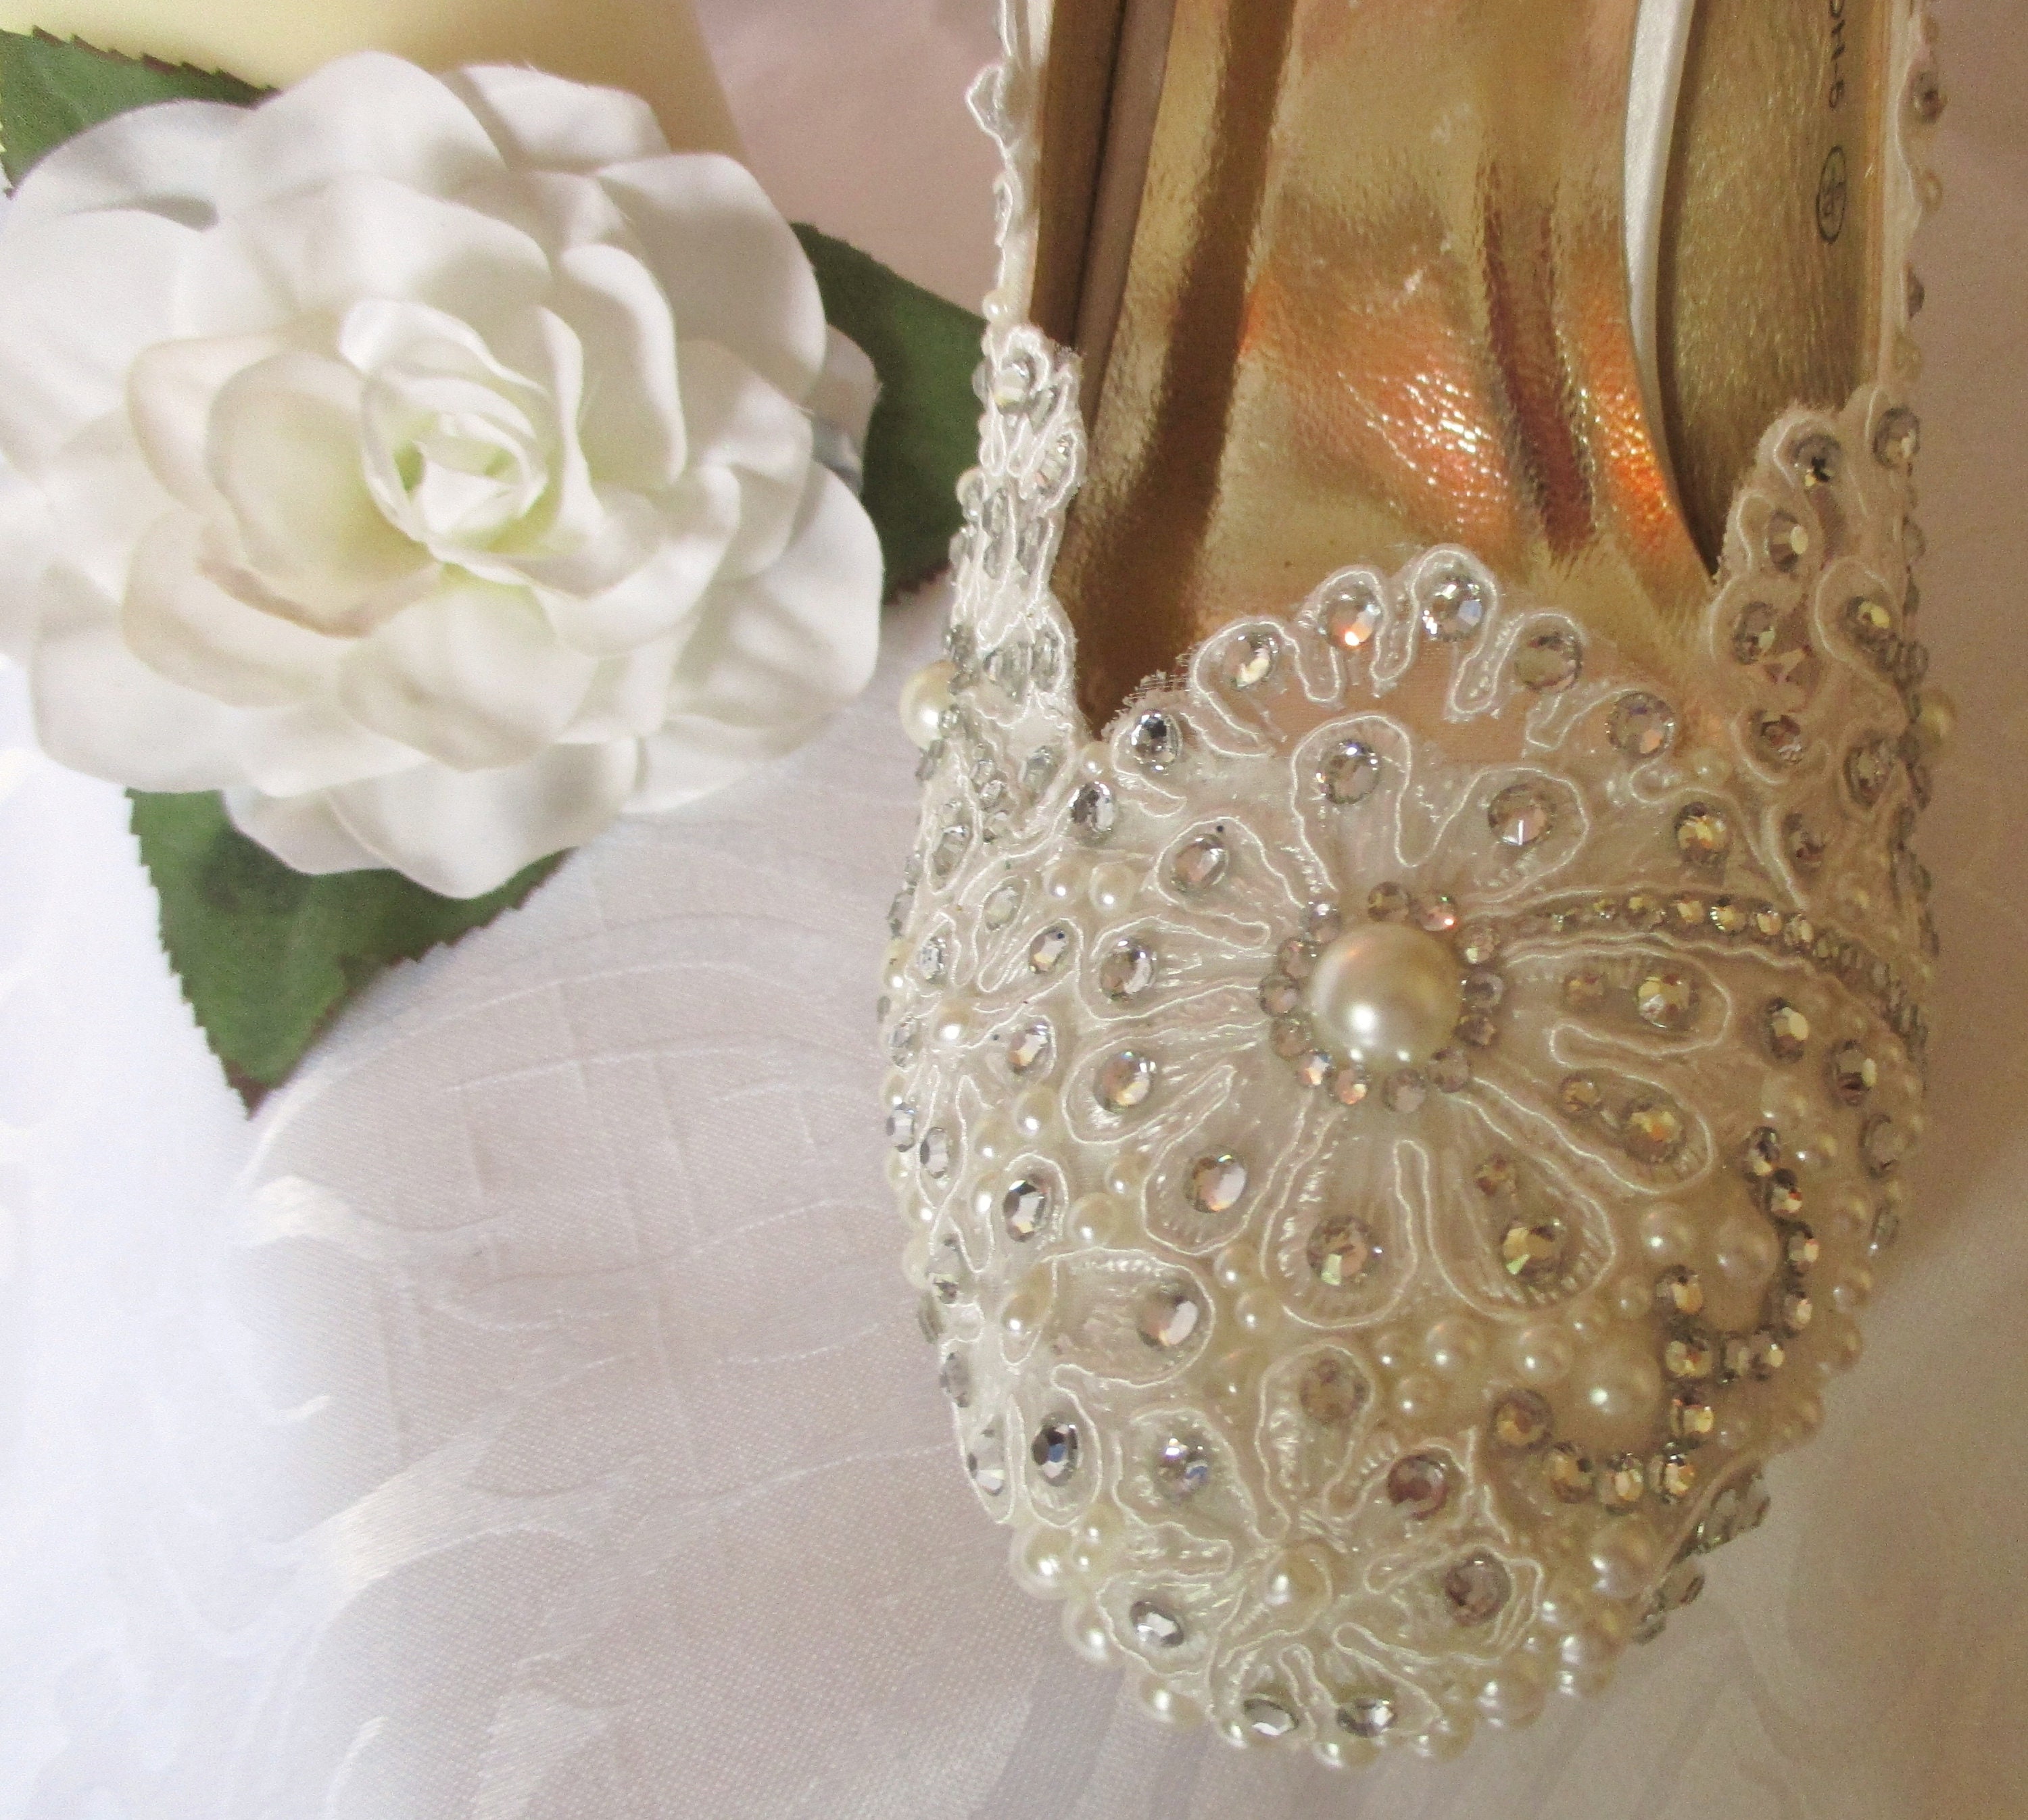 Lacegems and Pearls Bridal Shoes Bespoke Bridalshoe | Etsy UK